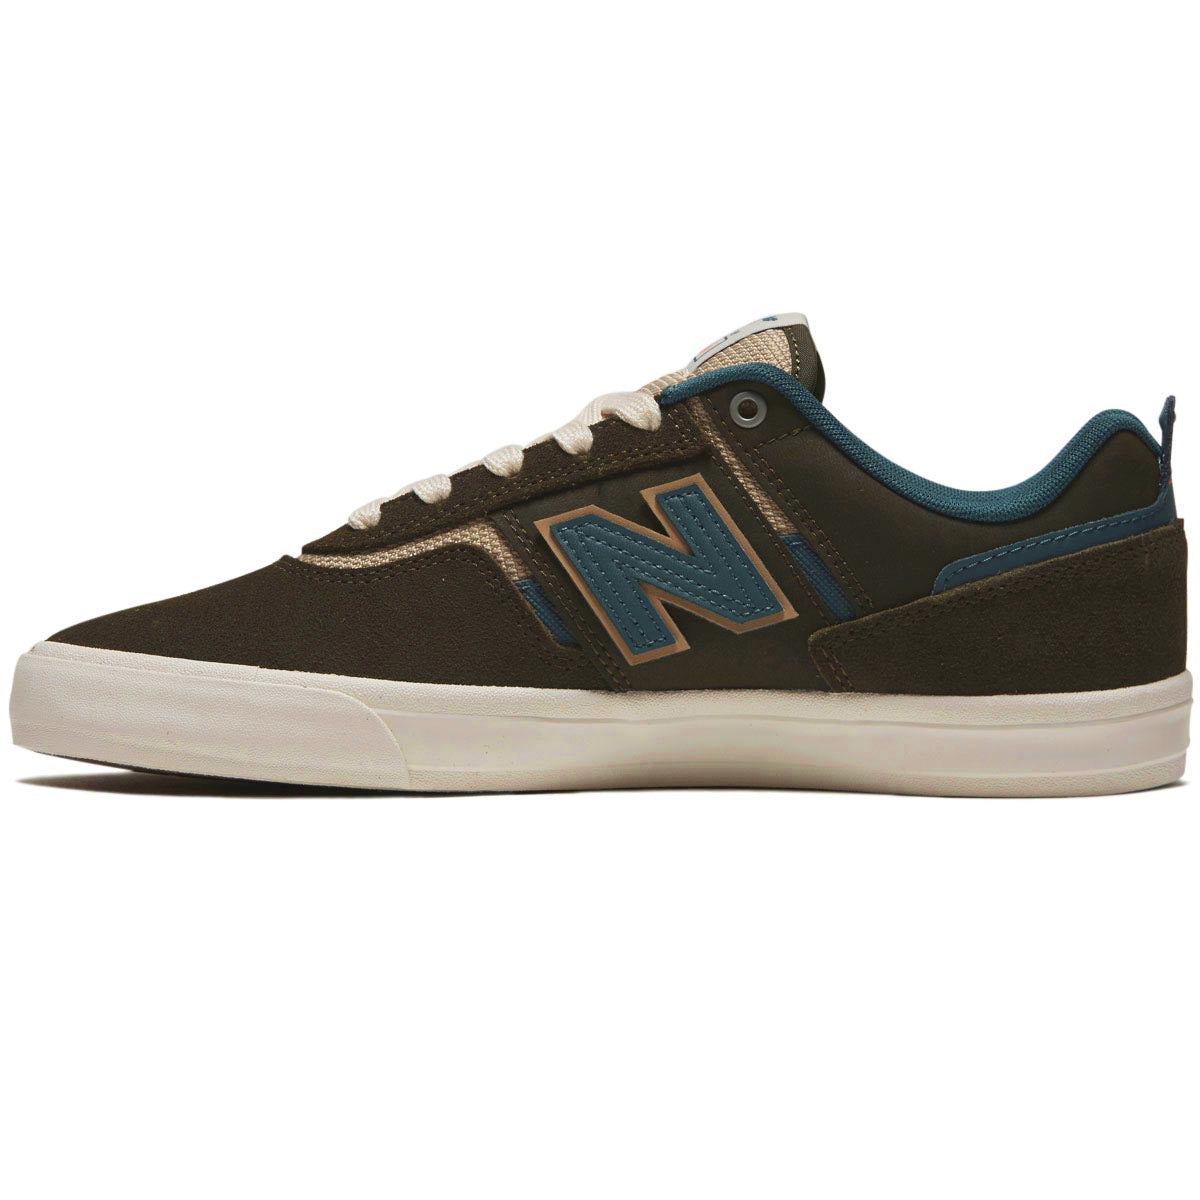 New Balance 306 Foy Shoes - Dark Olive/Spruce image 2